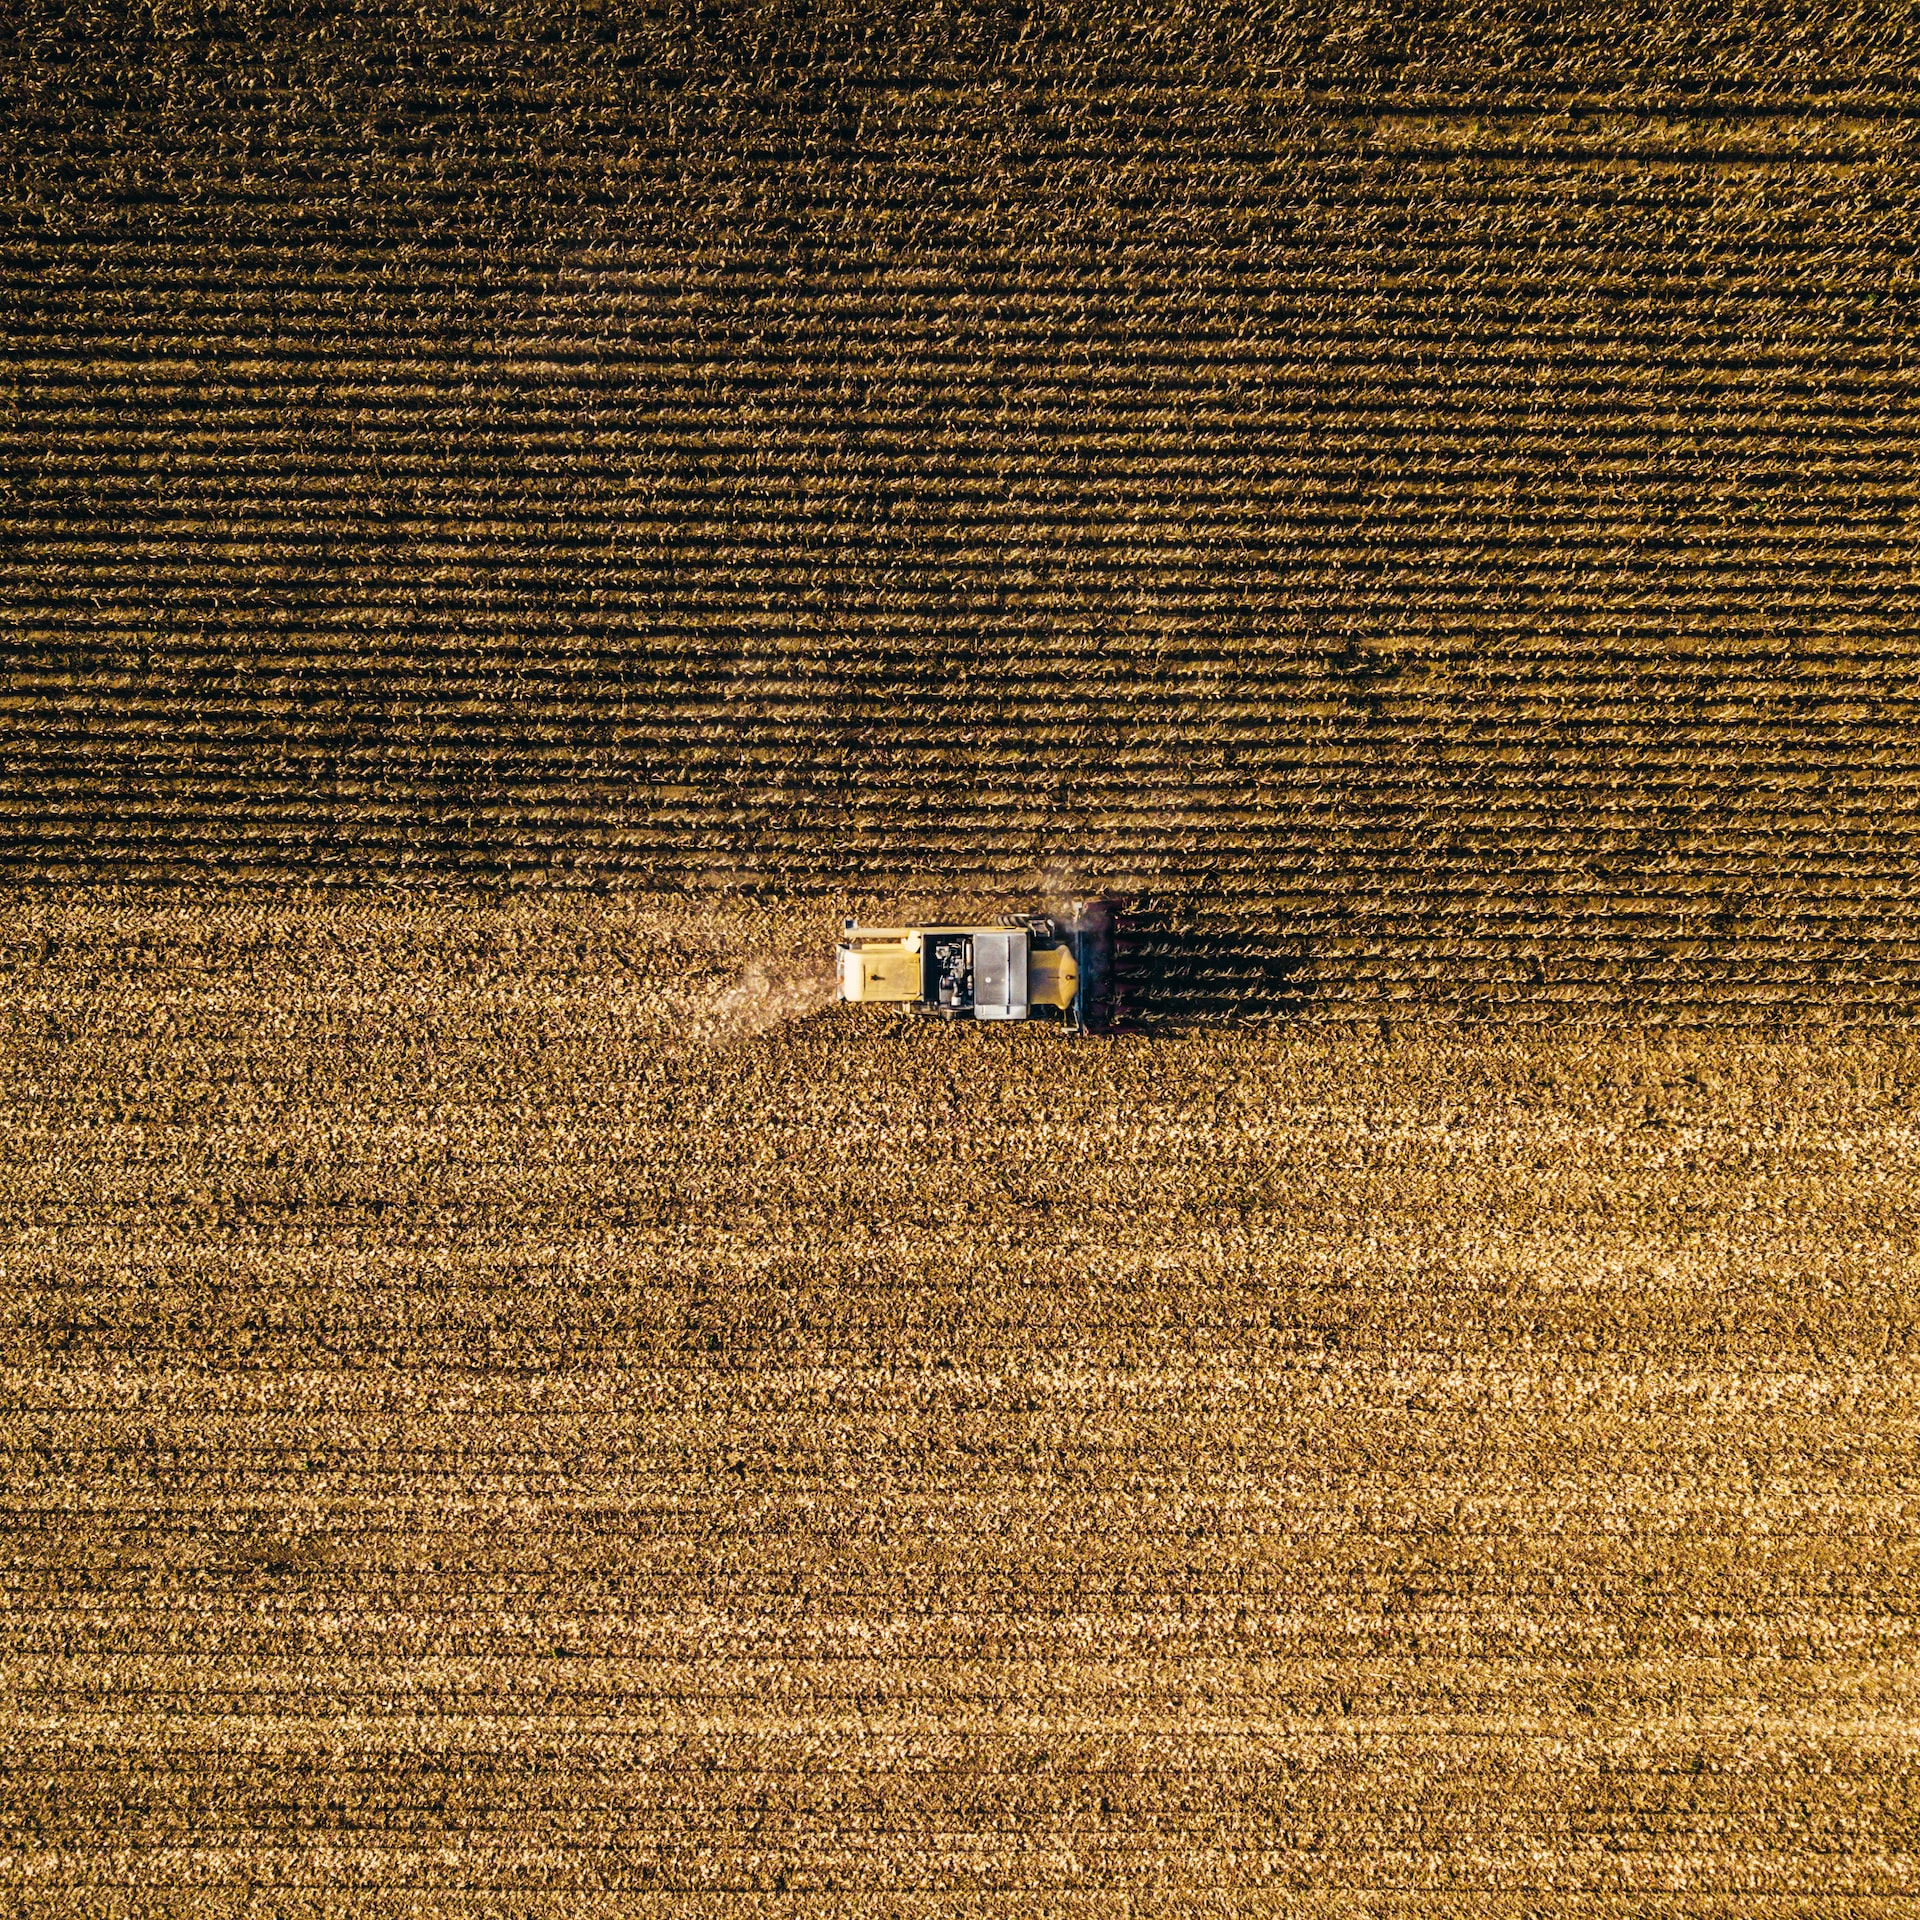 farming in Hungary